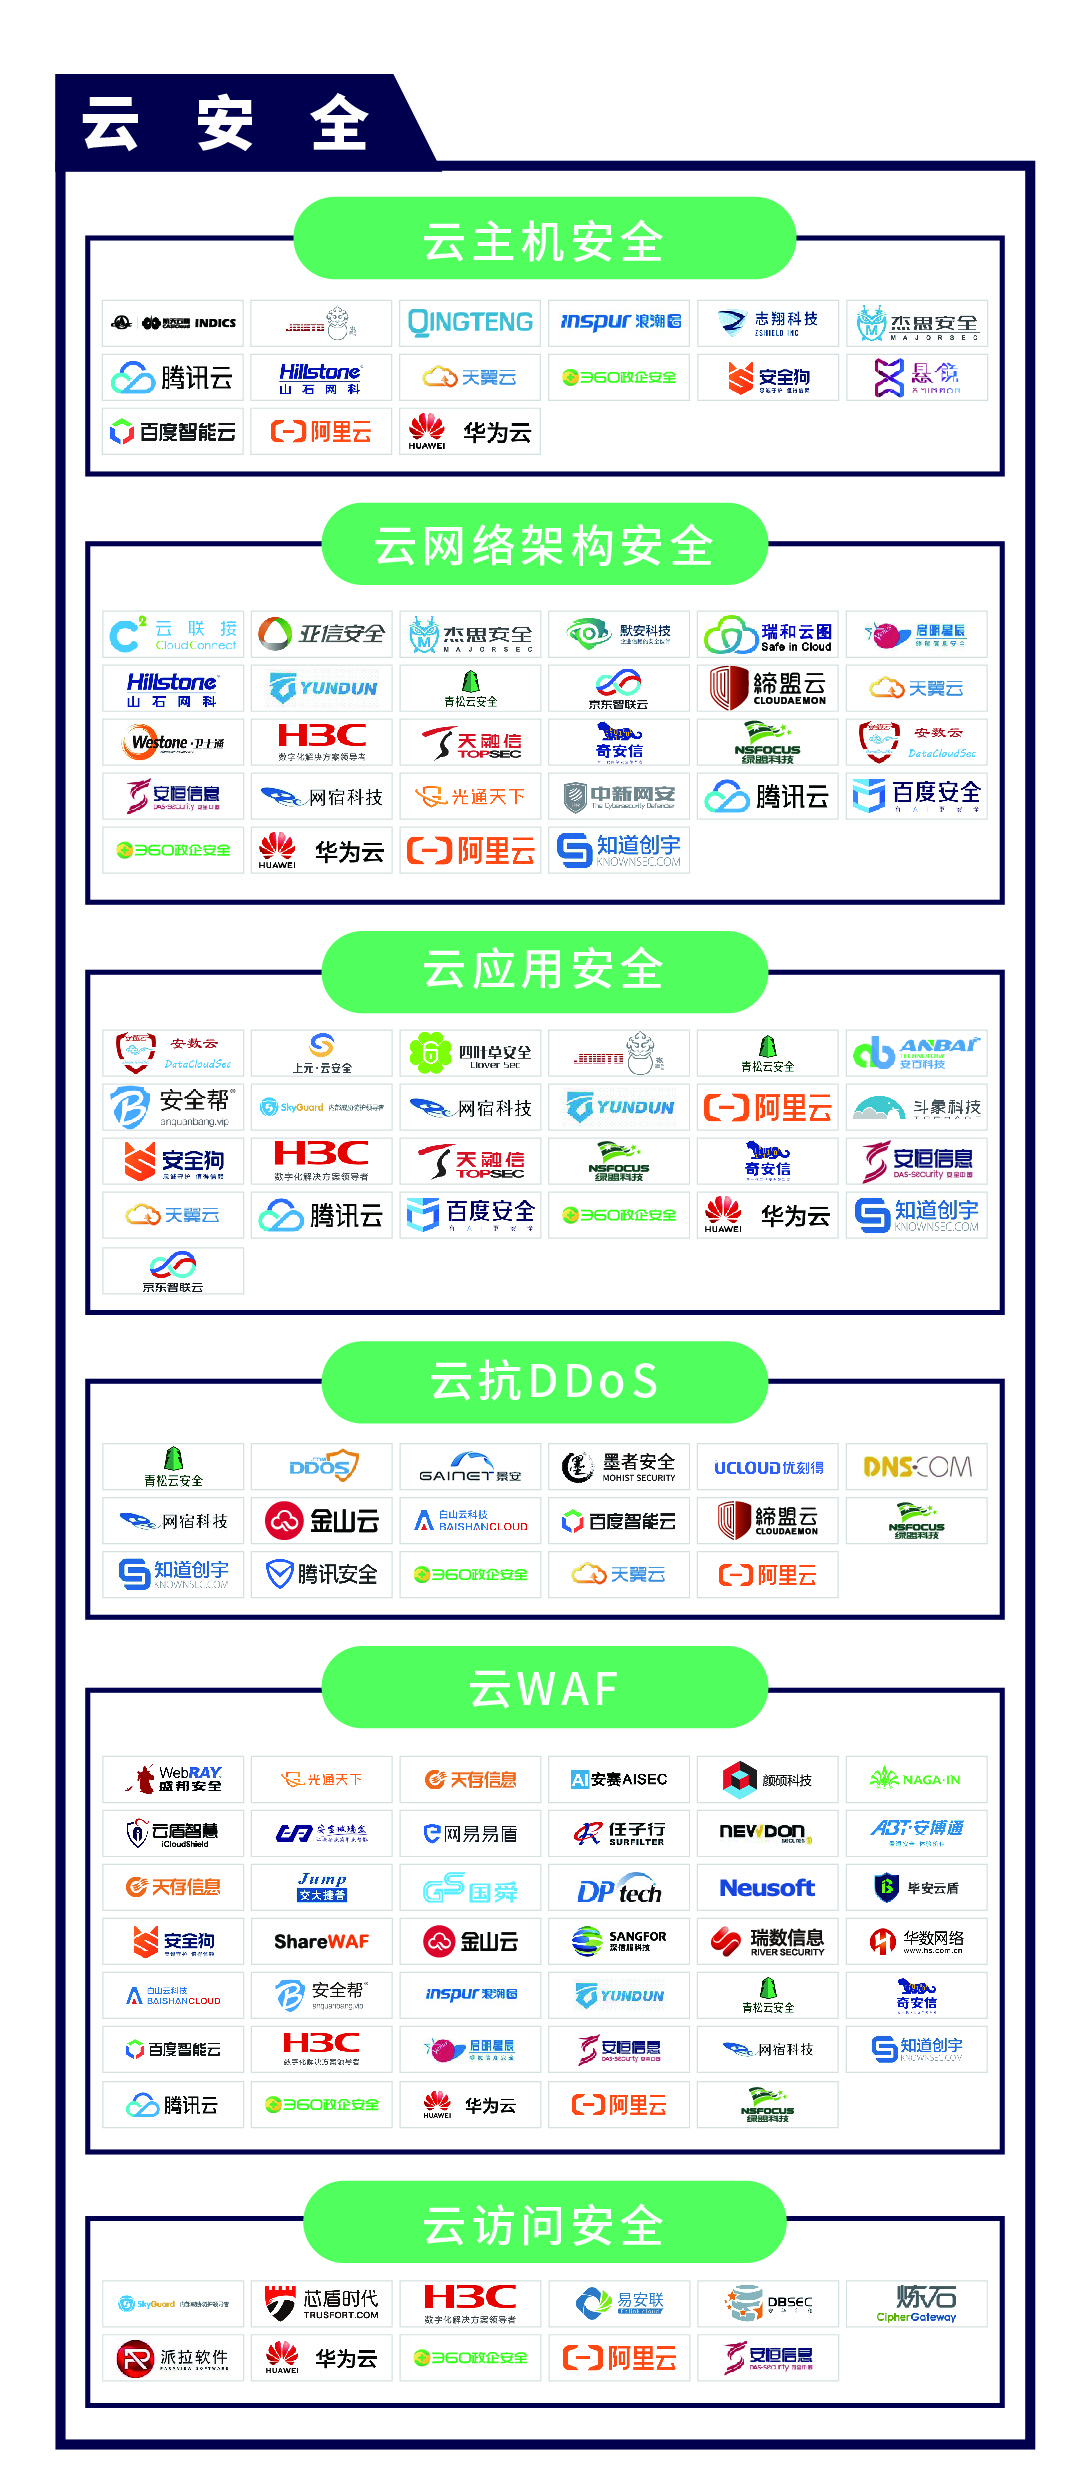 《CCSIP 2020中国网络安全产业全景图》正式发布 | FreeBuf咨询-第4张图片-网盾网络安全培训